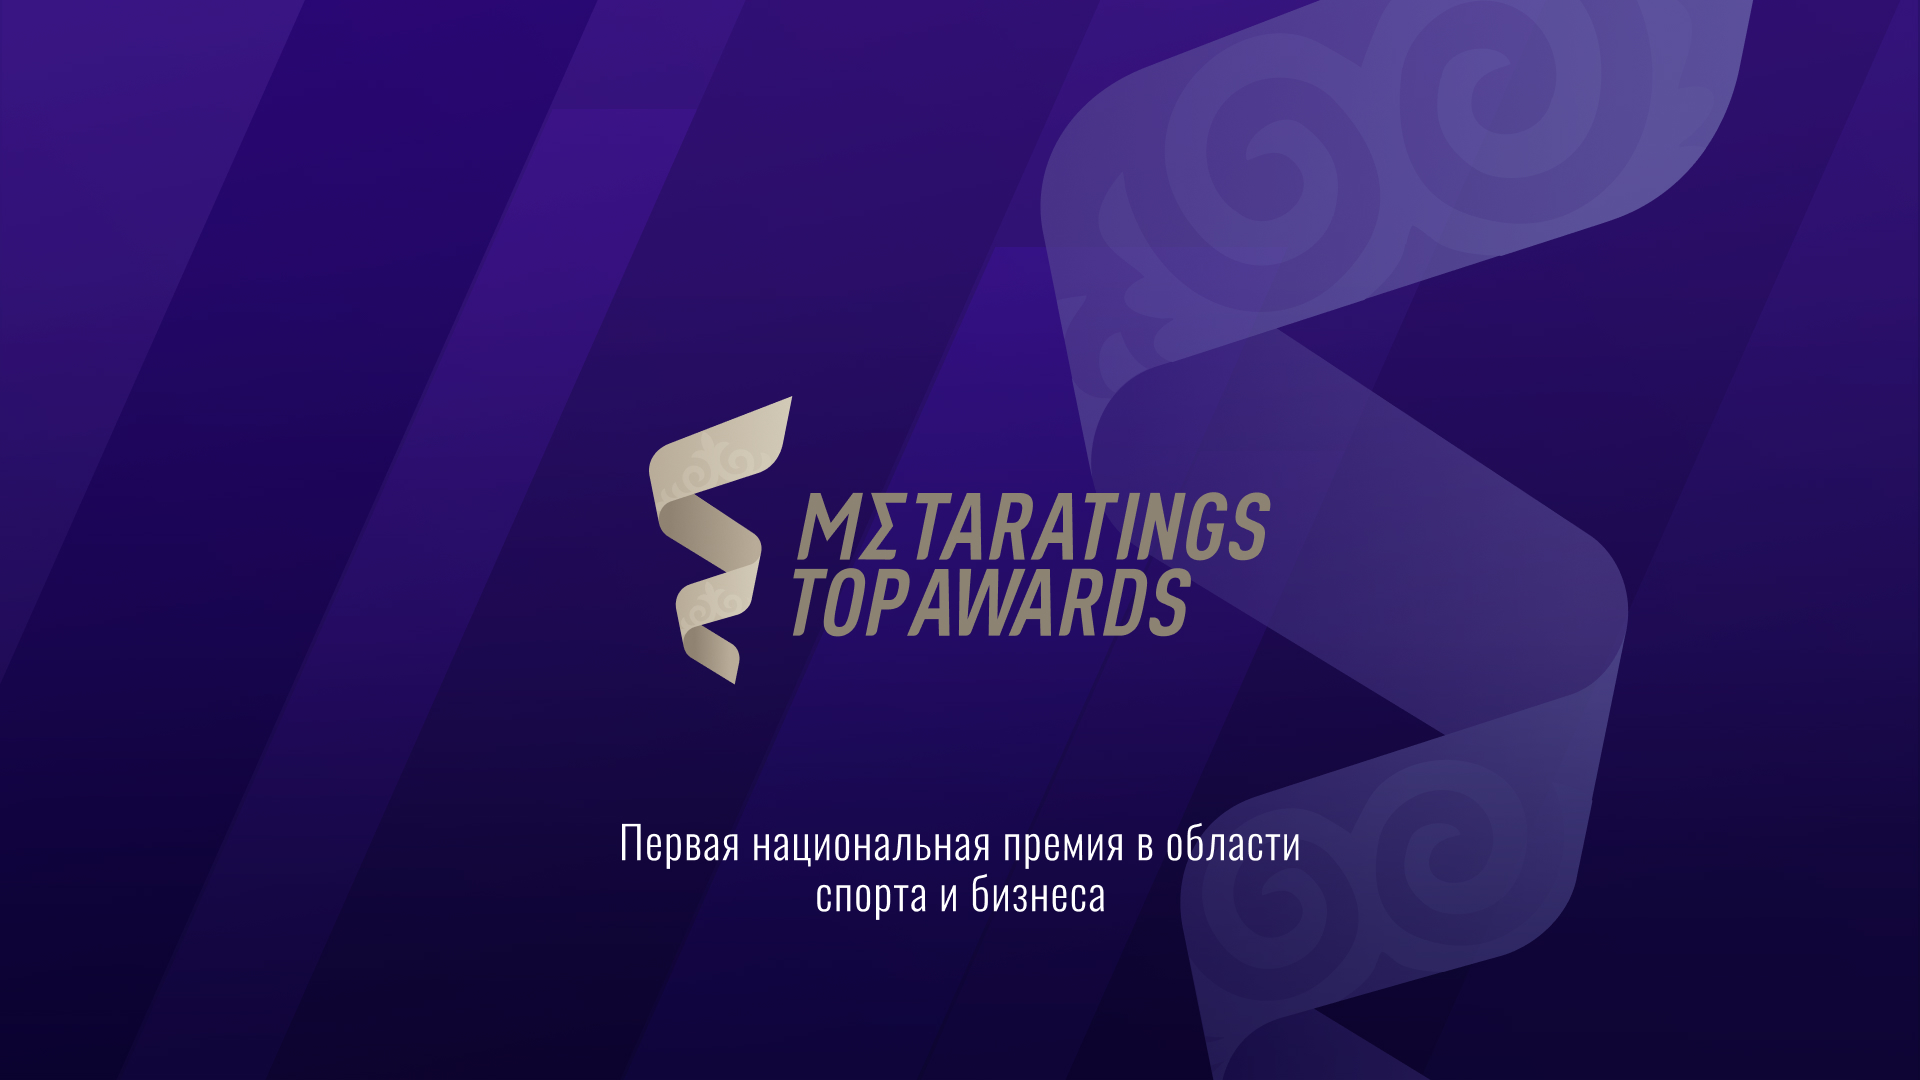 Metaratings Top Awards: первая национальная премия в области спорта и бизнеса